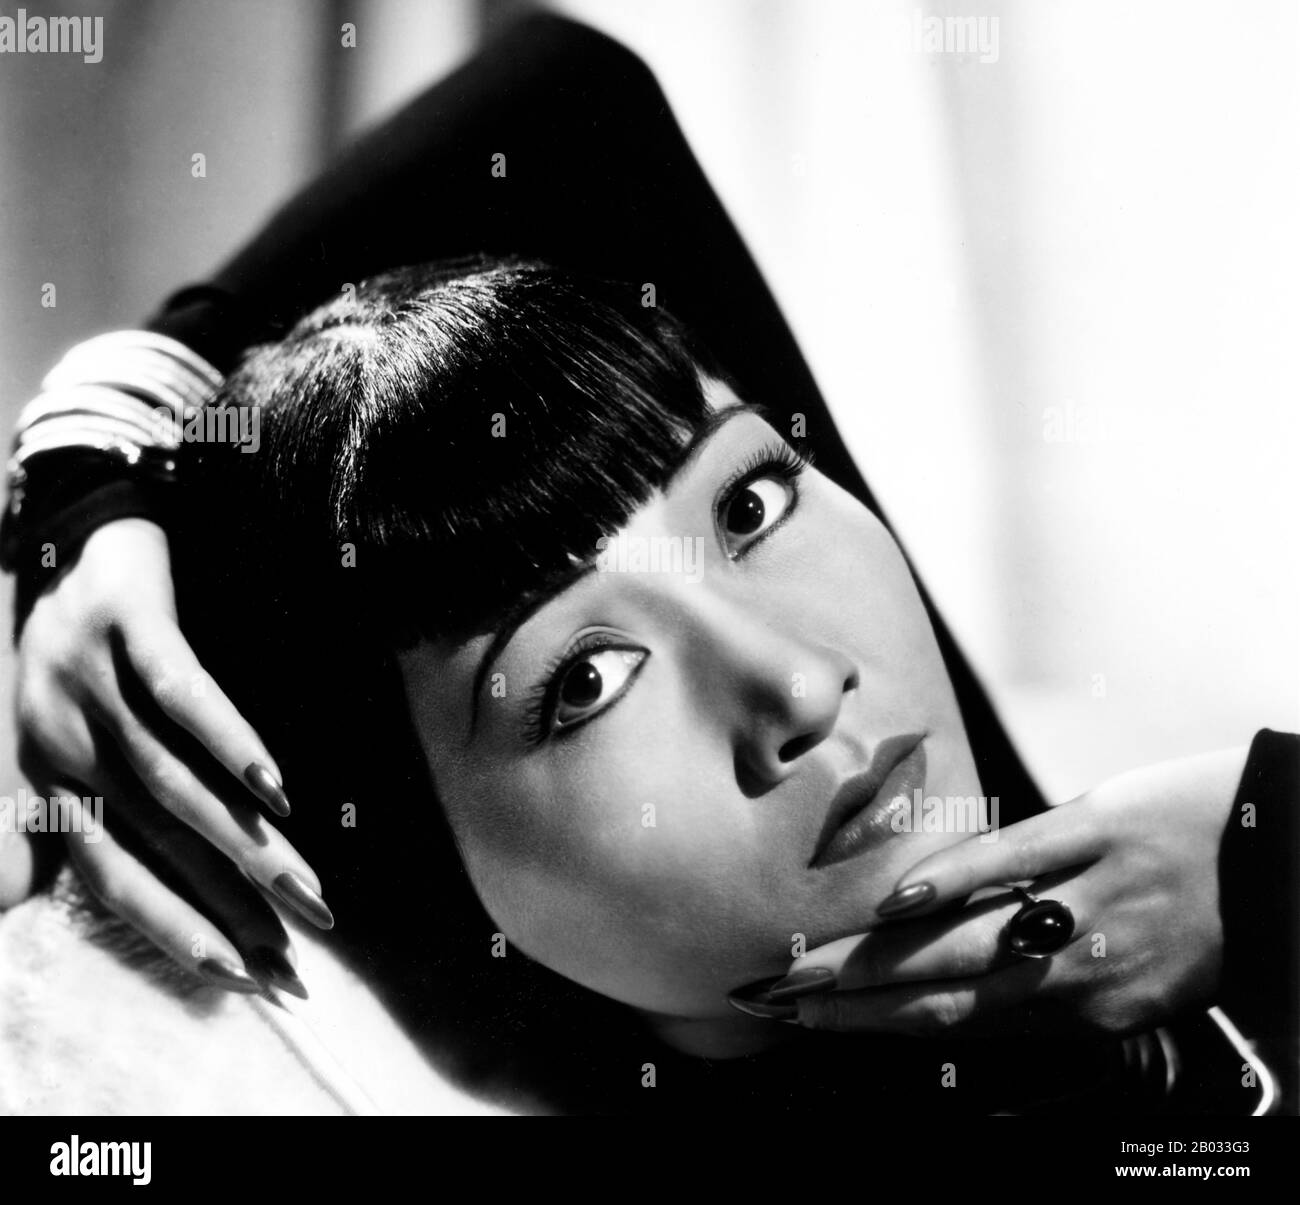 Anna May Wong (* 3. Januar 1905 in New York; † 3. Februar 1961) war eine US-amerikanische Schauspielerin, der erste Chinesisch-amerikanische Filmstar und die erste Asian Amerikanerin, die zu einem internationalen Star wurde. Ihre lange und abwechslungsreiche Karriere umfasste sowohl Stummfilm als auch Tonfilm, Fernsehen, Bühne und Radio. In der Nähe des Chinatown-Viertels von Los Angeles zu Chinesisch-amerikanischen Eltern der zweiten Generation geboren, wurde Wong mit den Filmen infatuiert und begann schon früh in Filmen zu spielen. Während der Stummfilmzeit agierte sie in Der toll of the Sea (1922), einem der ersten Filme in Farbe und Douglas Fairbanks' The Thief of Bagda Stockfoto